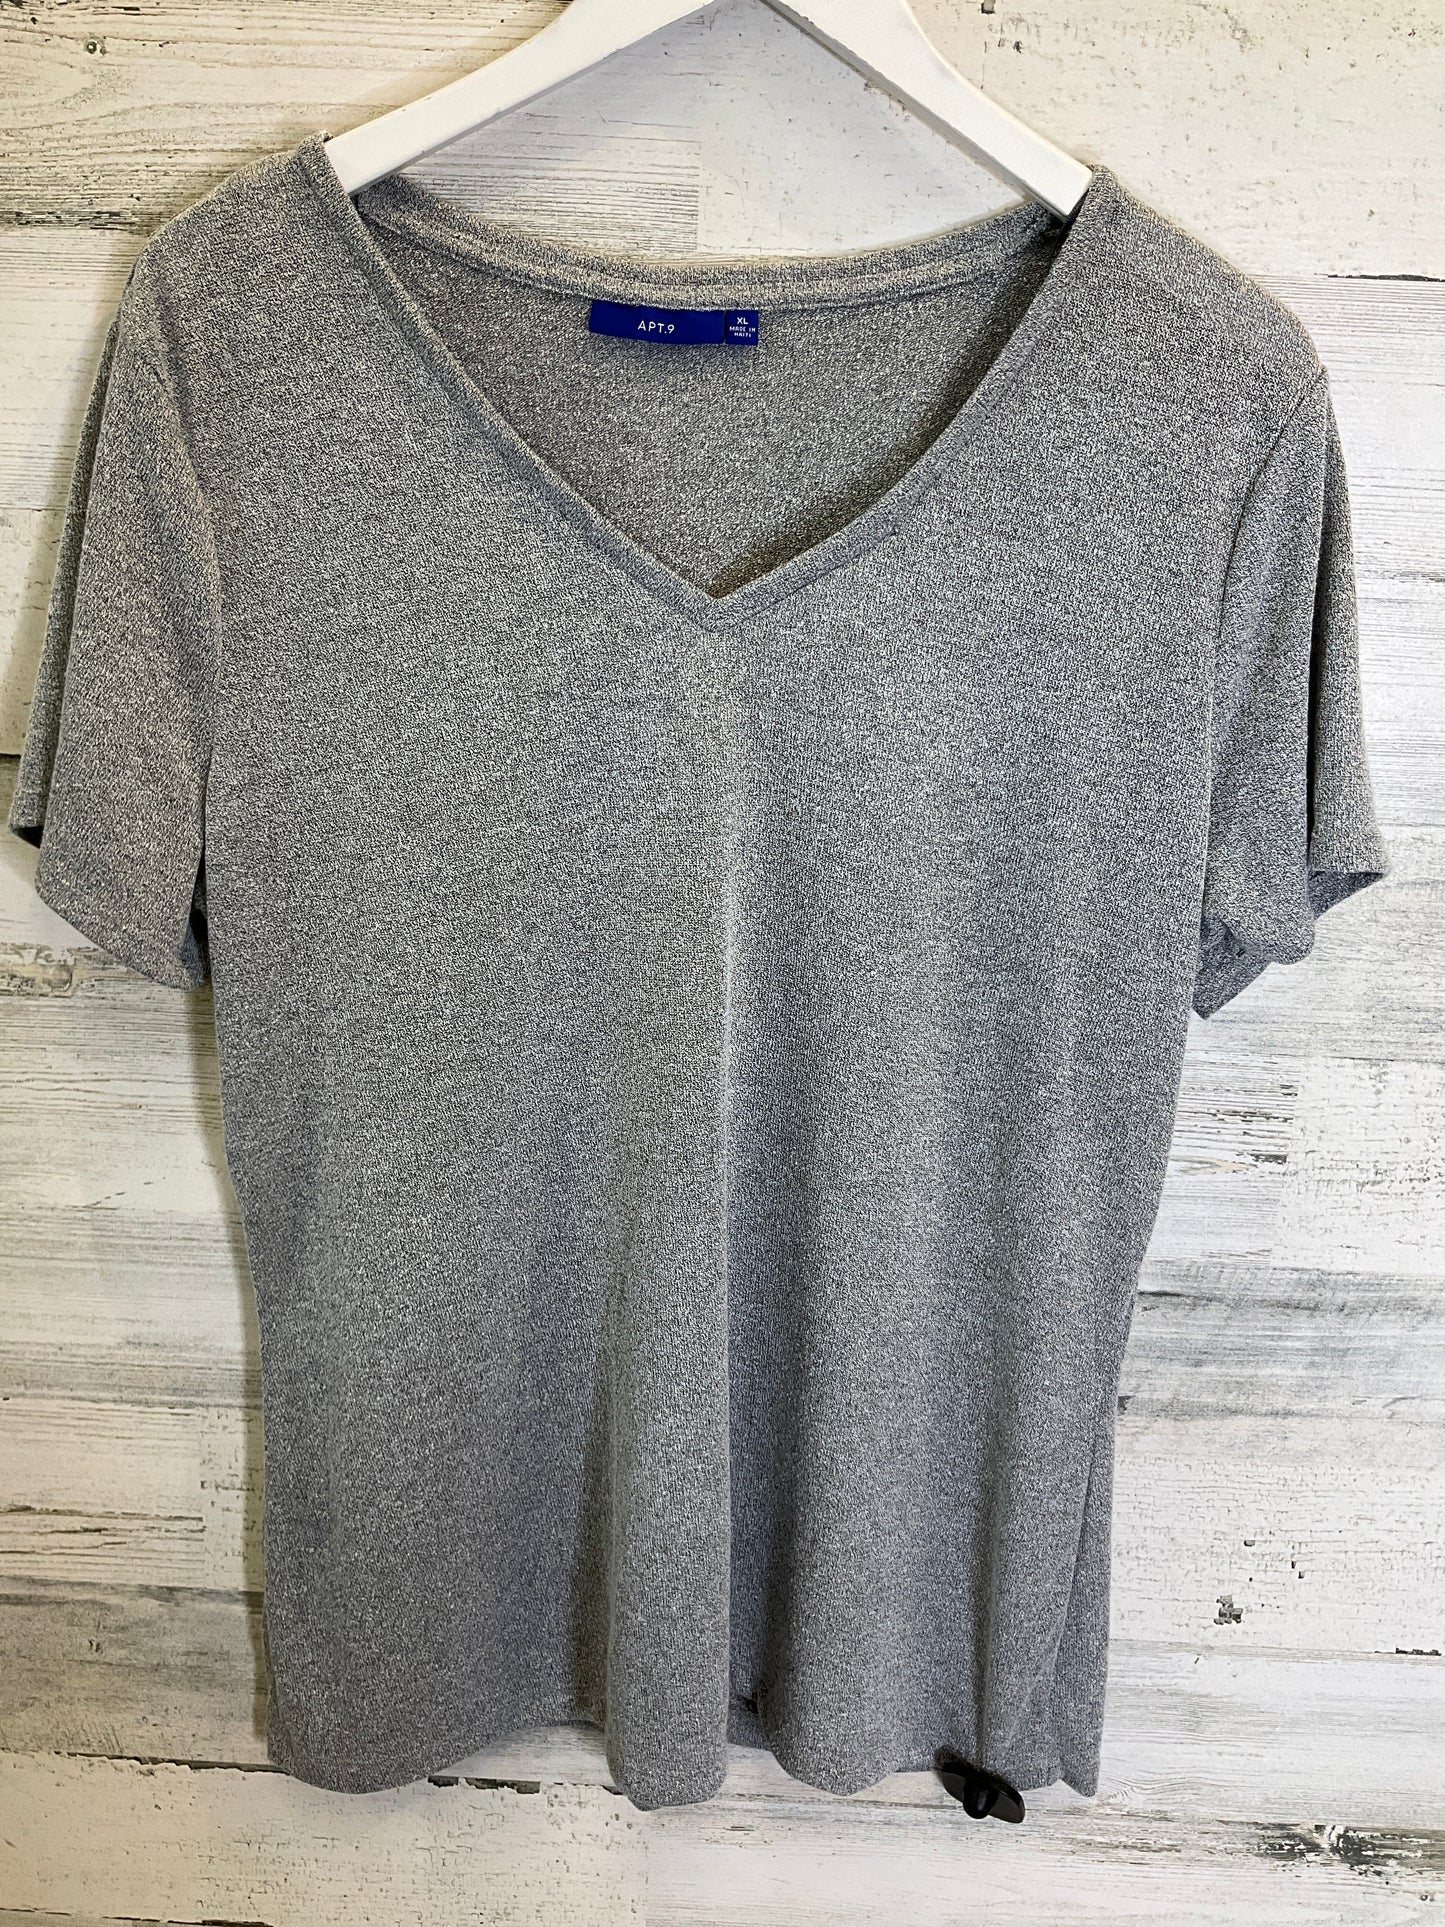 Grey Top Short Sleeve Apt 9, Size Xl